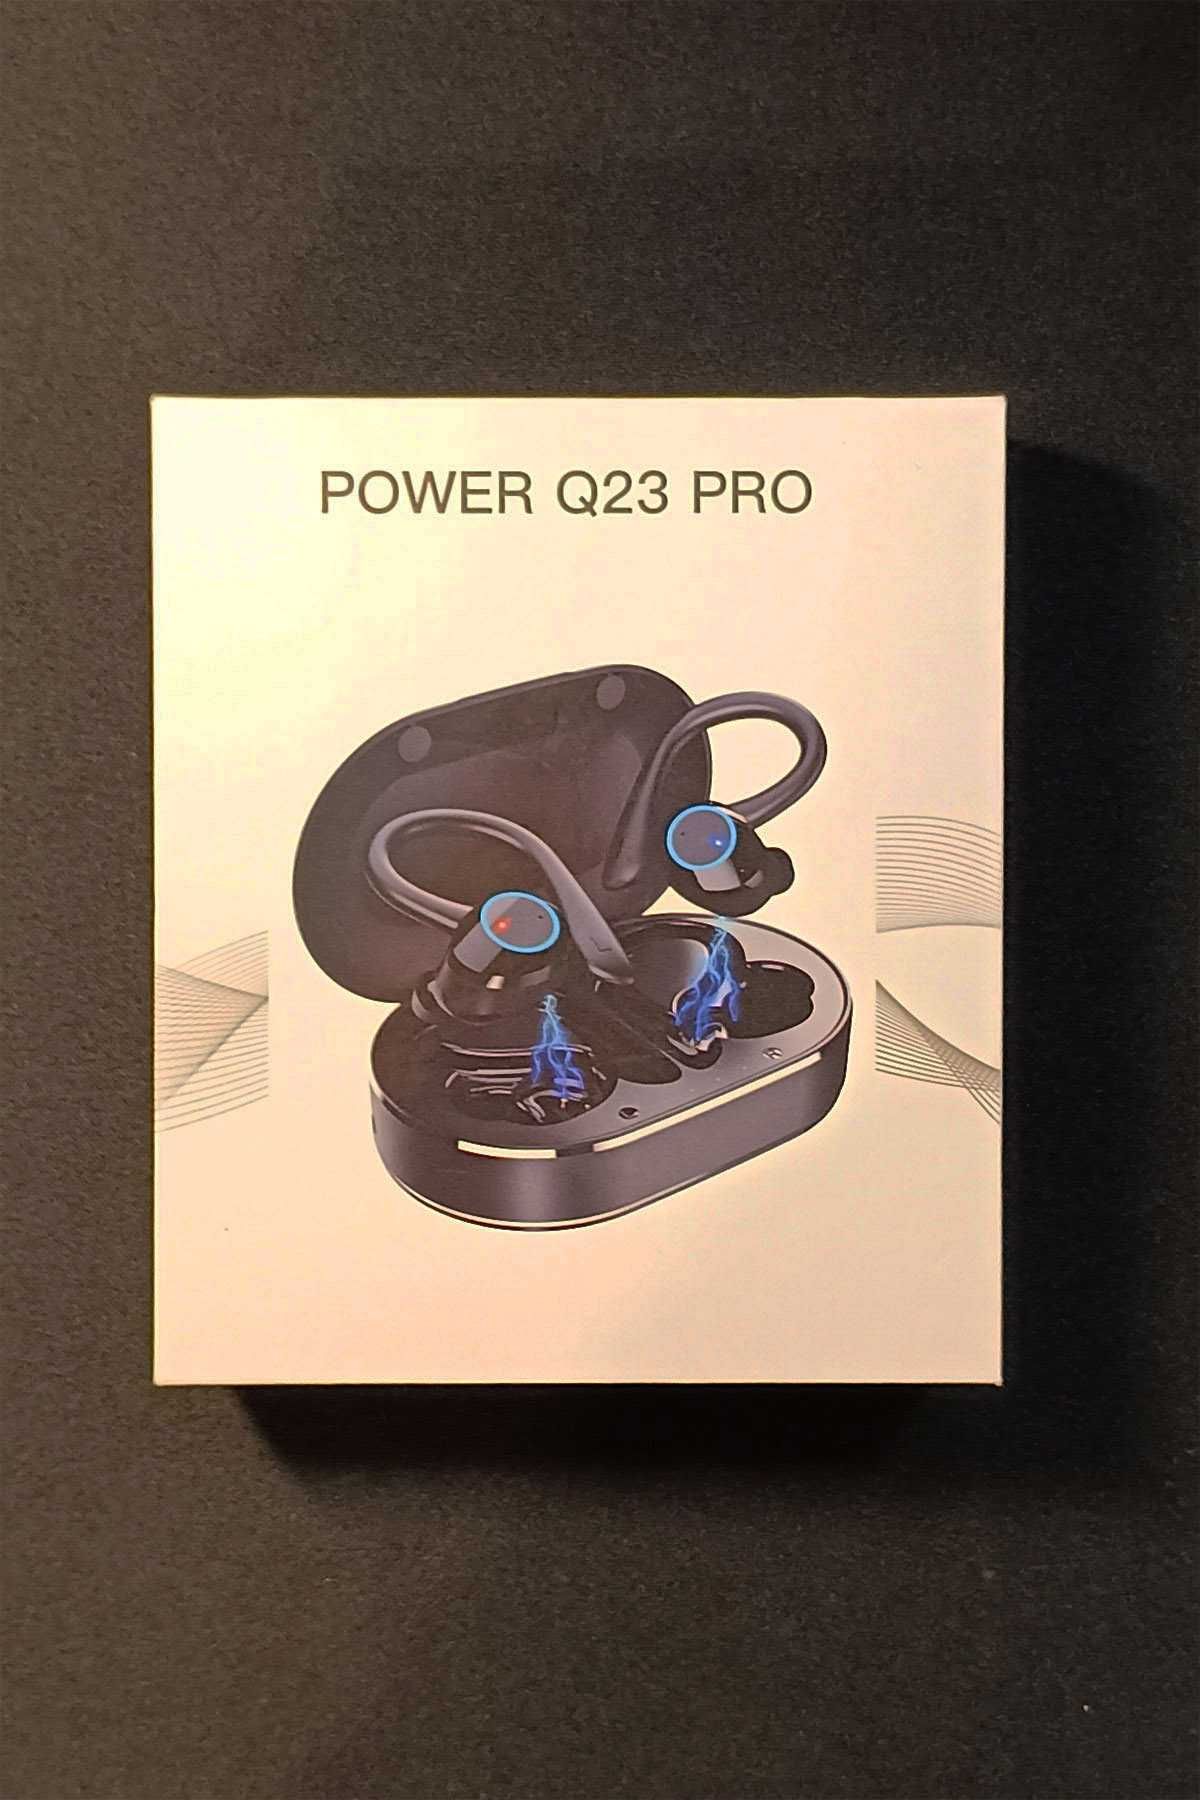 Fones de ouvido desporto (Power Q23 Pro)